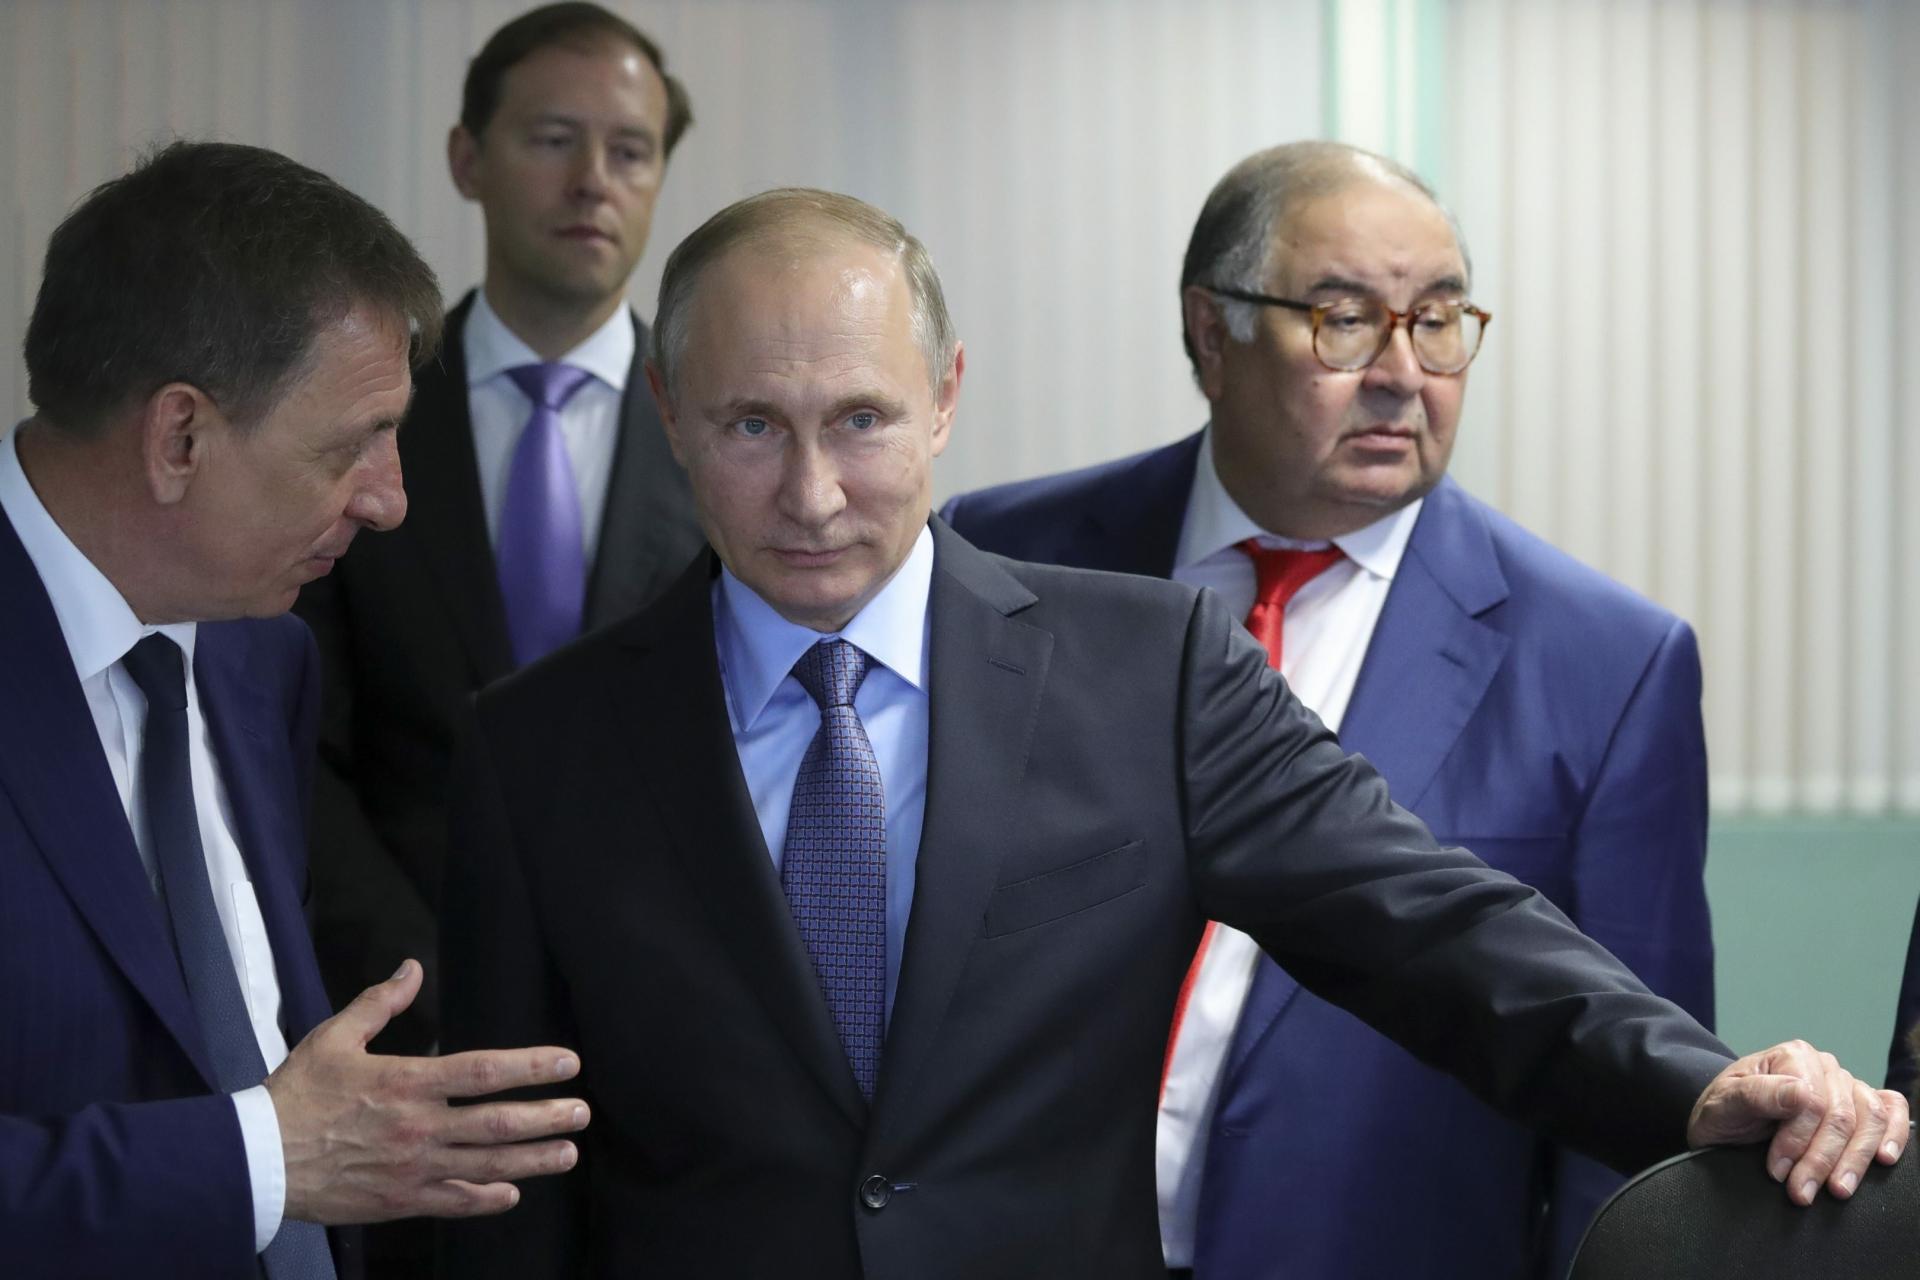 „Čo šaškujete? Kedy sa budú podpisovať zmluvy?“ Putin verejne pokarhal ruského ministra priemyslu (video)